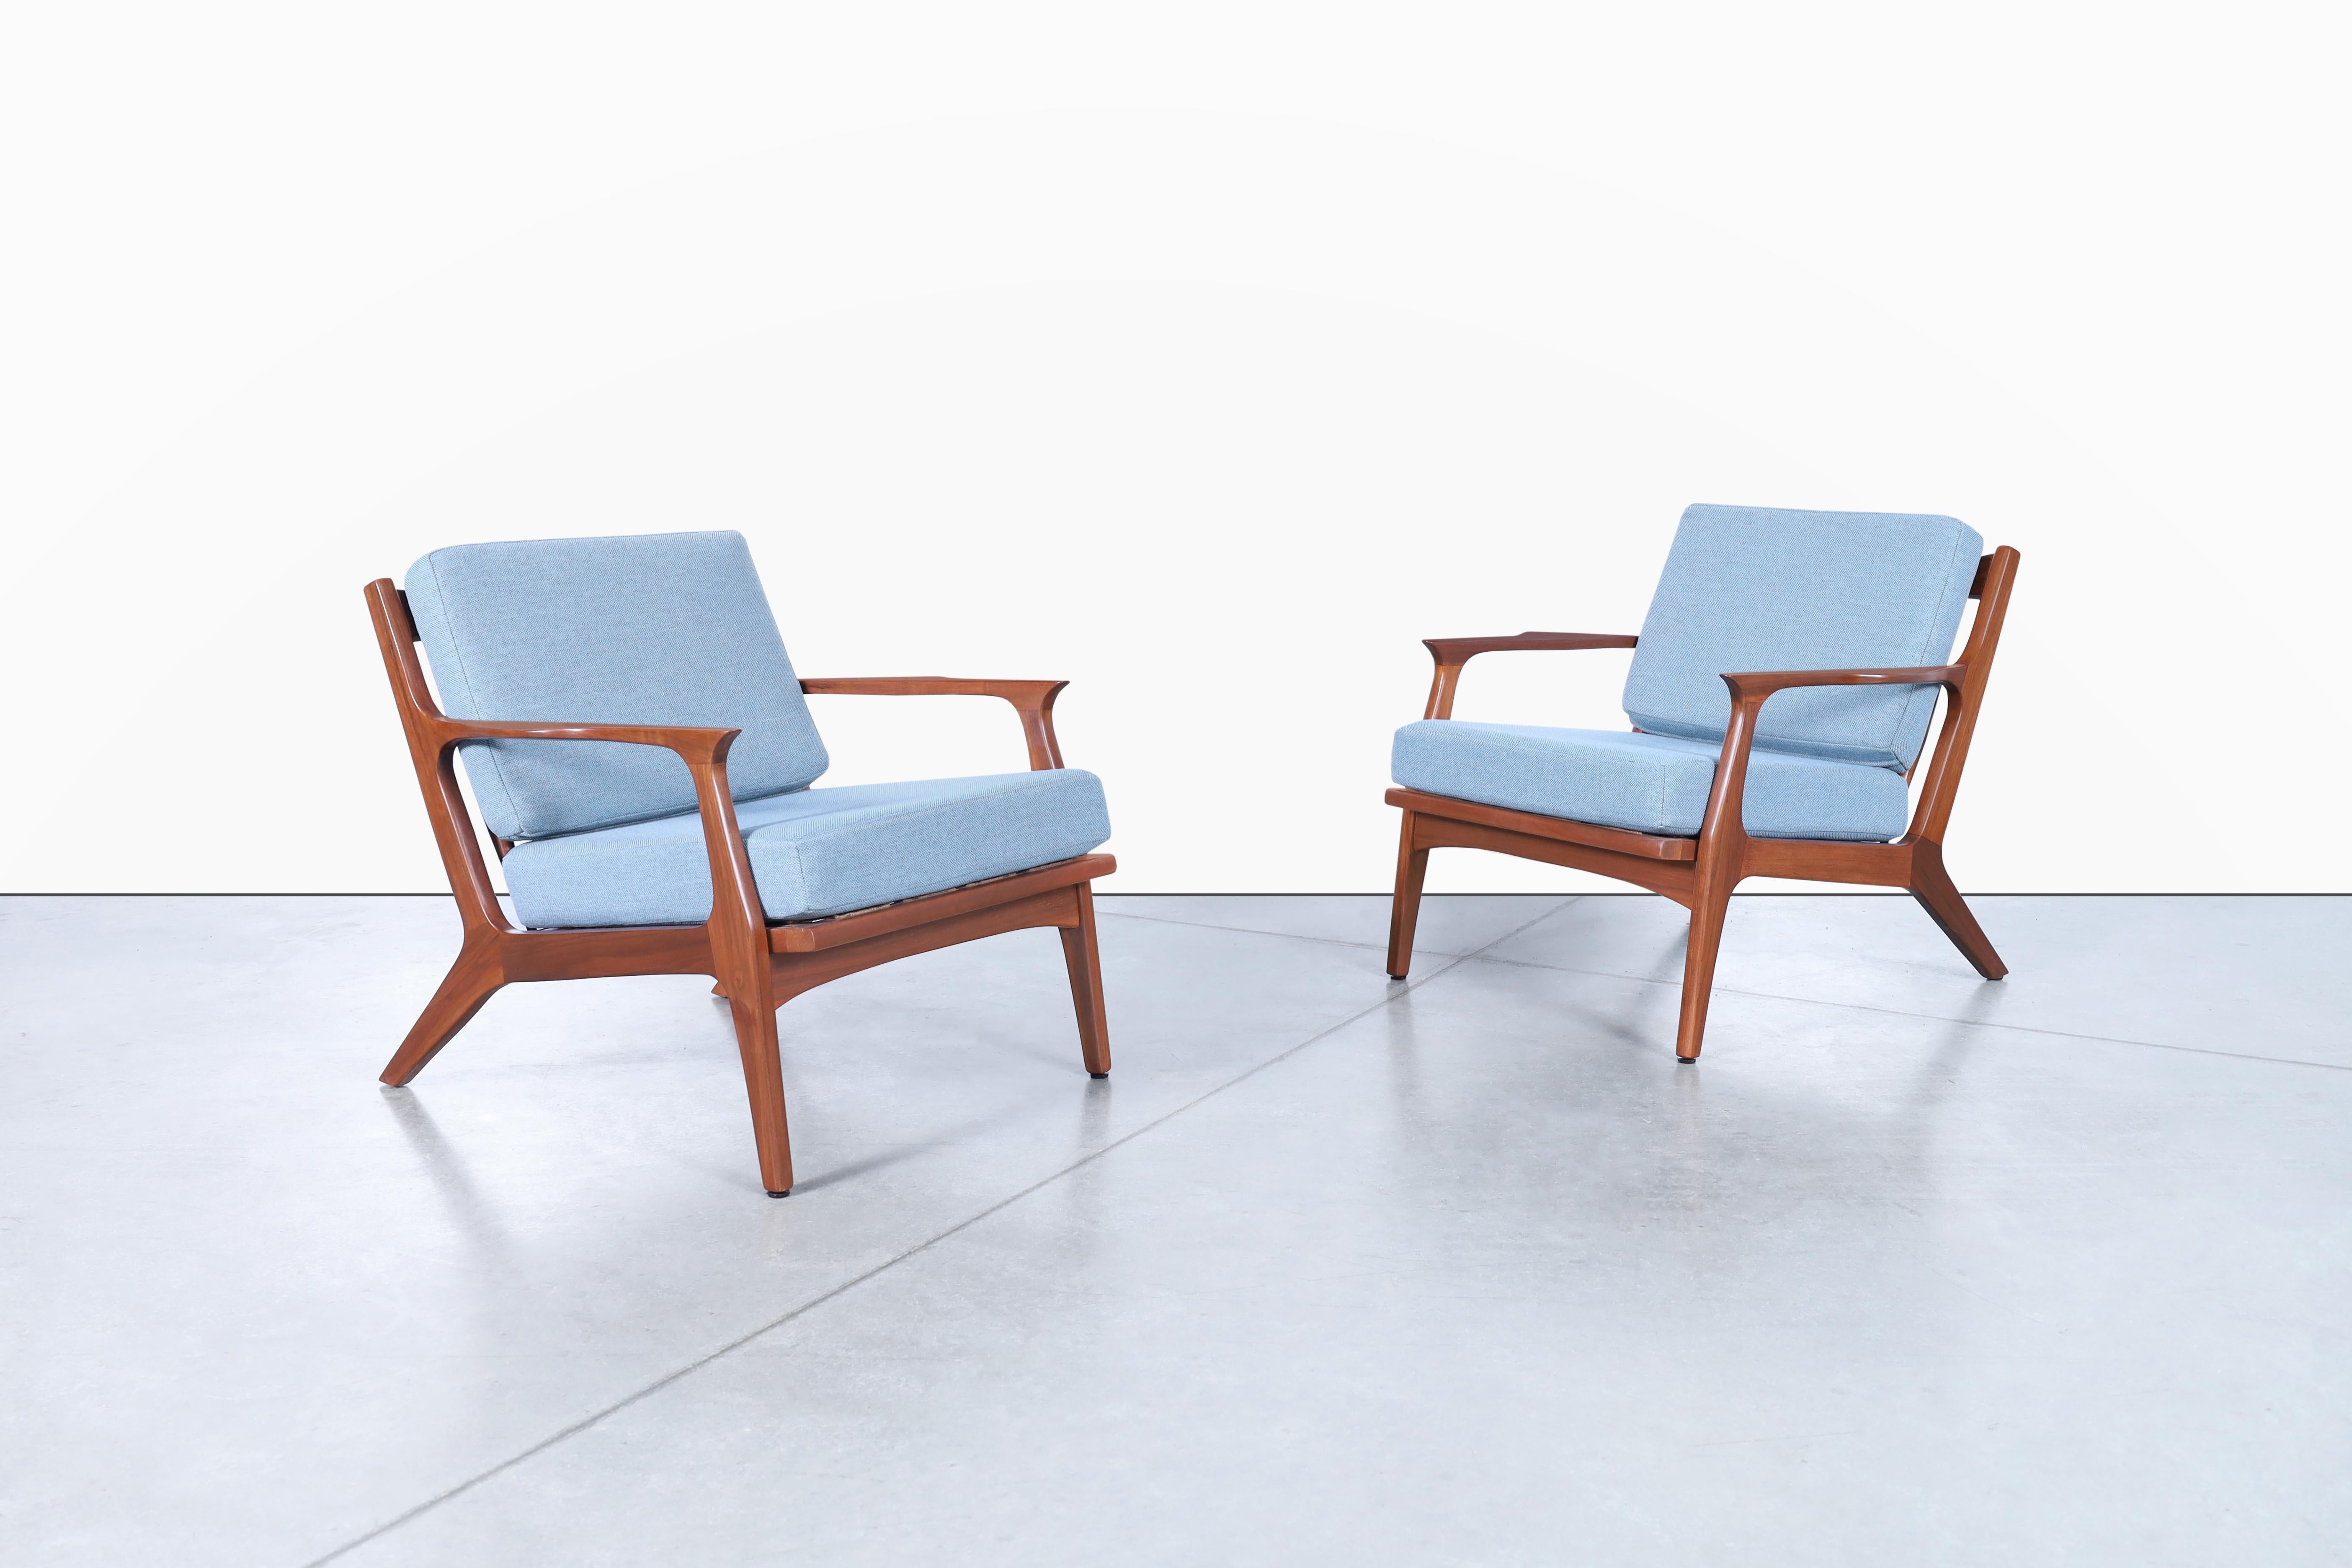 Atemberaubende moderne dänische Loungesessel aus Nussbaumholz, inspiriert von der dänischen Designikone Ib Kofod-Larsen für Selig in Dänemark, ca. 1960er Jahre. Diese Stühle sind wirklich atemberaubend! Der Rahmen aus massivem Walnussholz ist